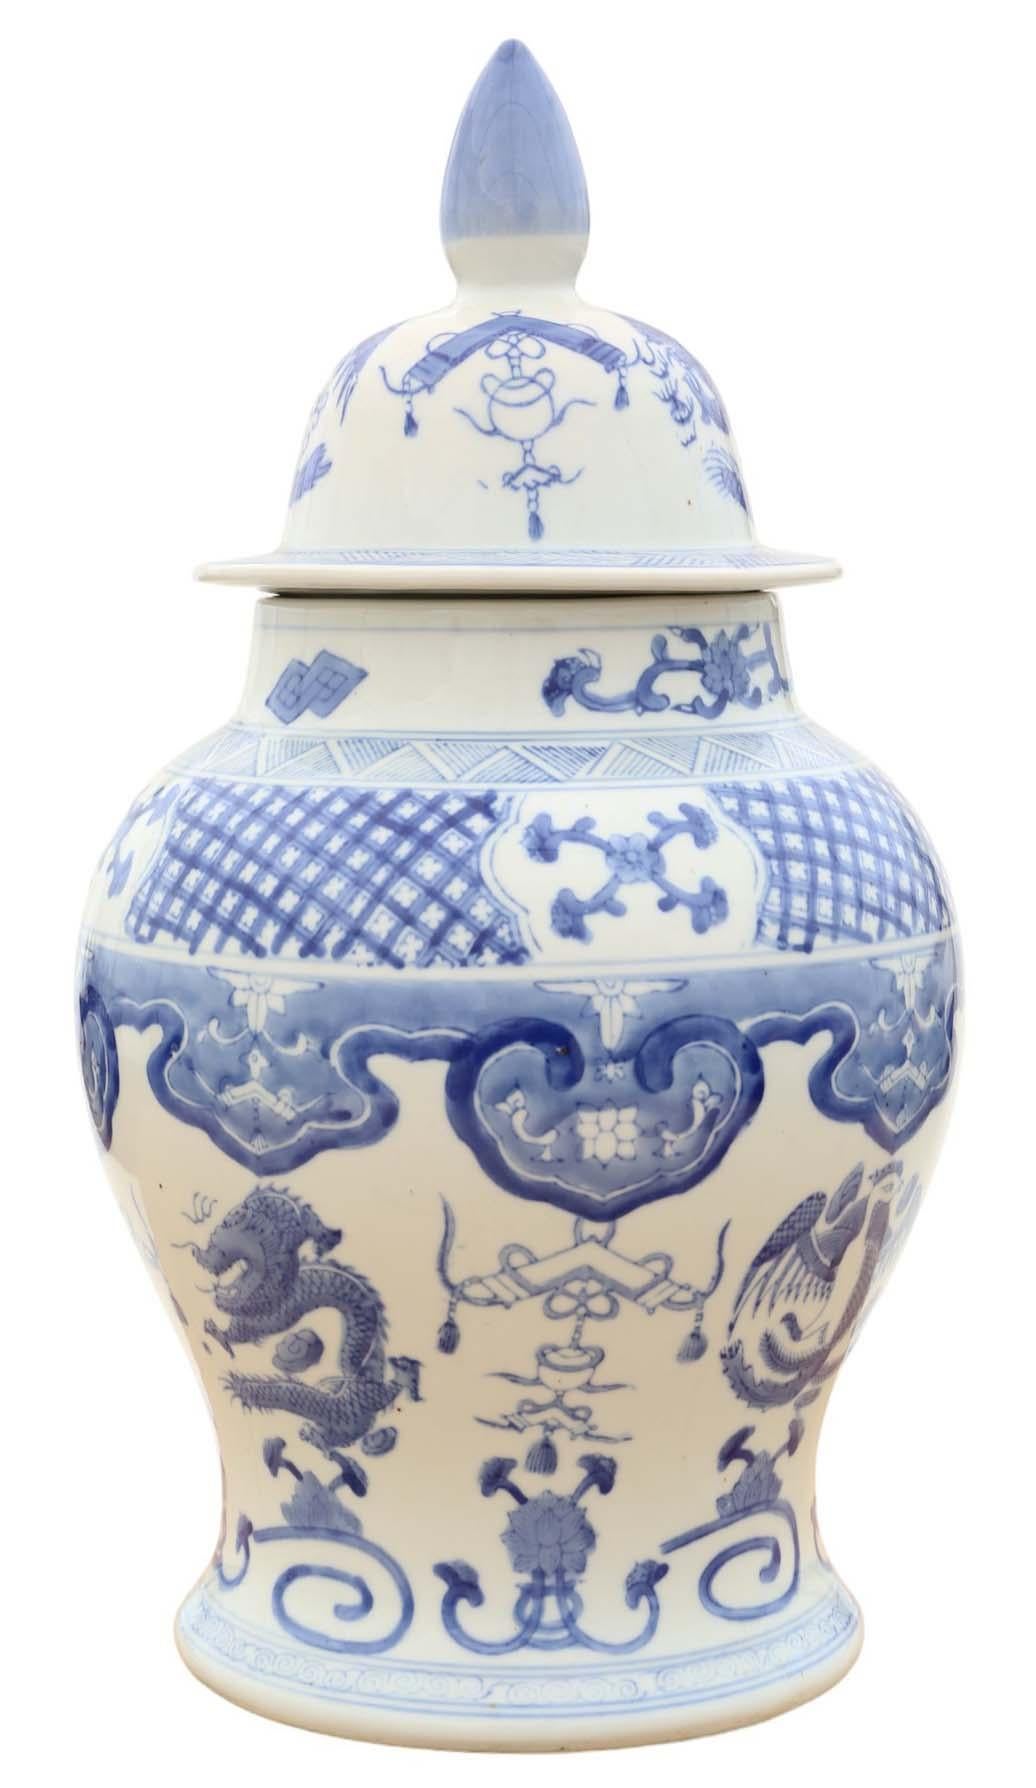 Grand pot à gingembre ancien en céramique orientale chinoise bleue et blanche avec couvercle, datant vraisemblablement du début du 20e siècle. Il porte une marque à 4 caractères sur la base.

Cette pièce est exceptionnellement décorative et